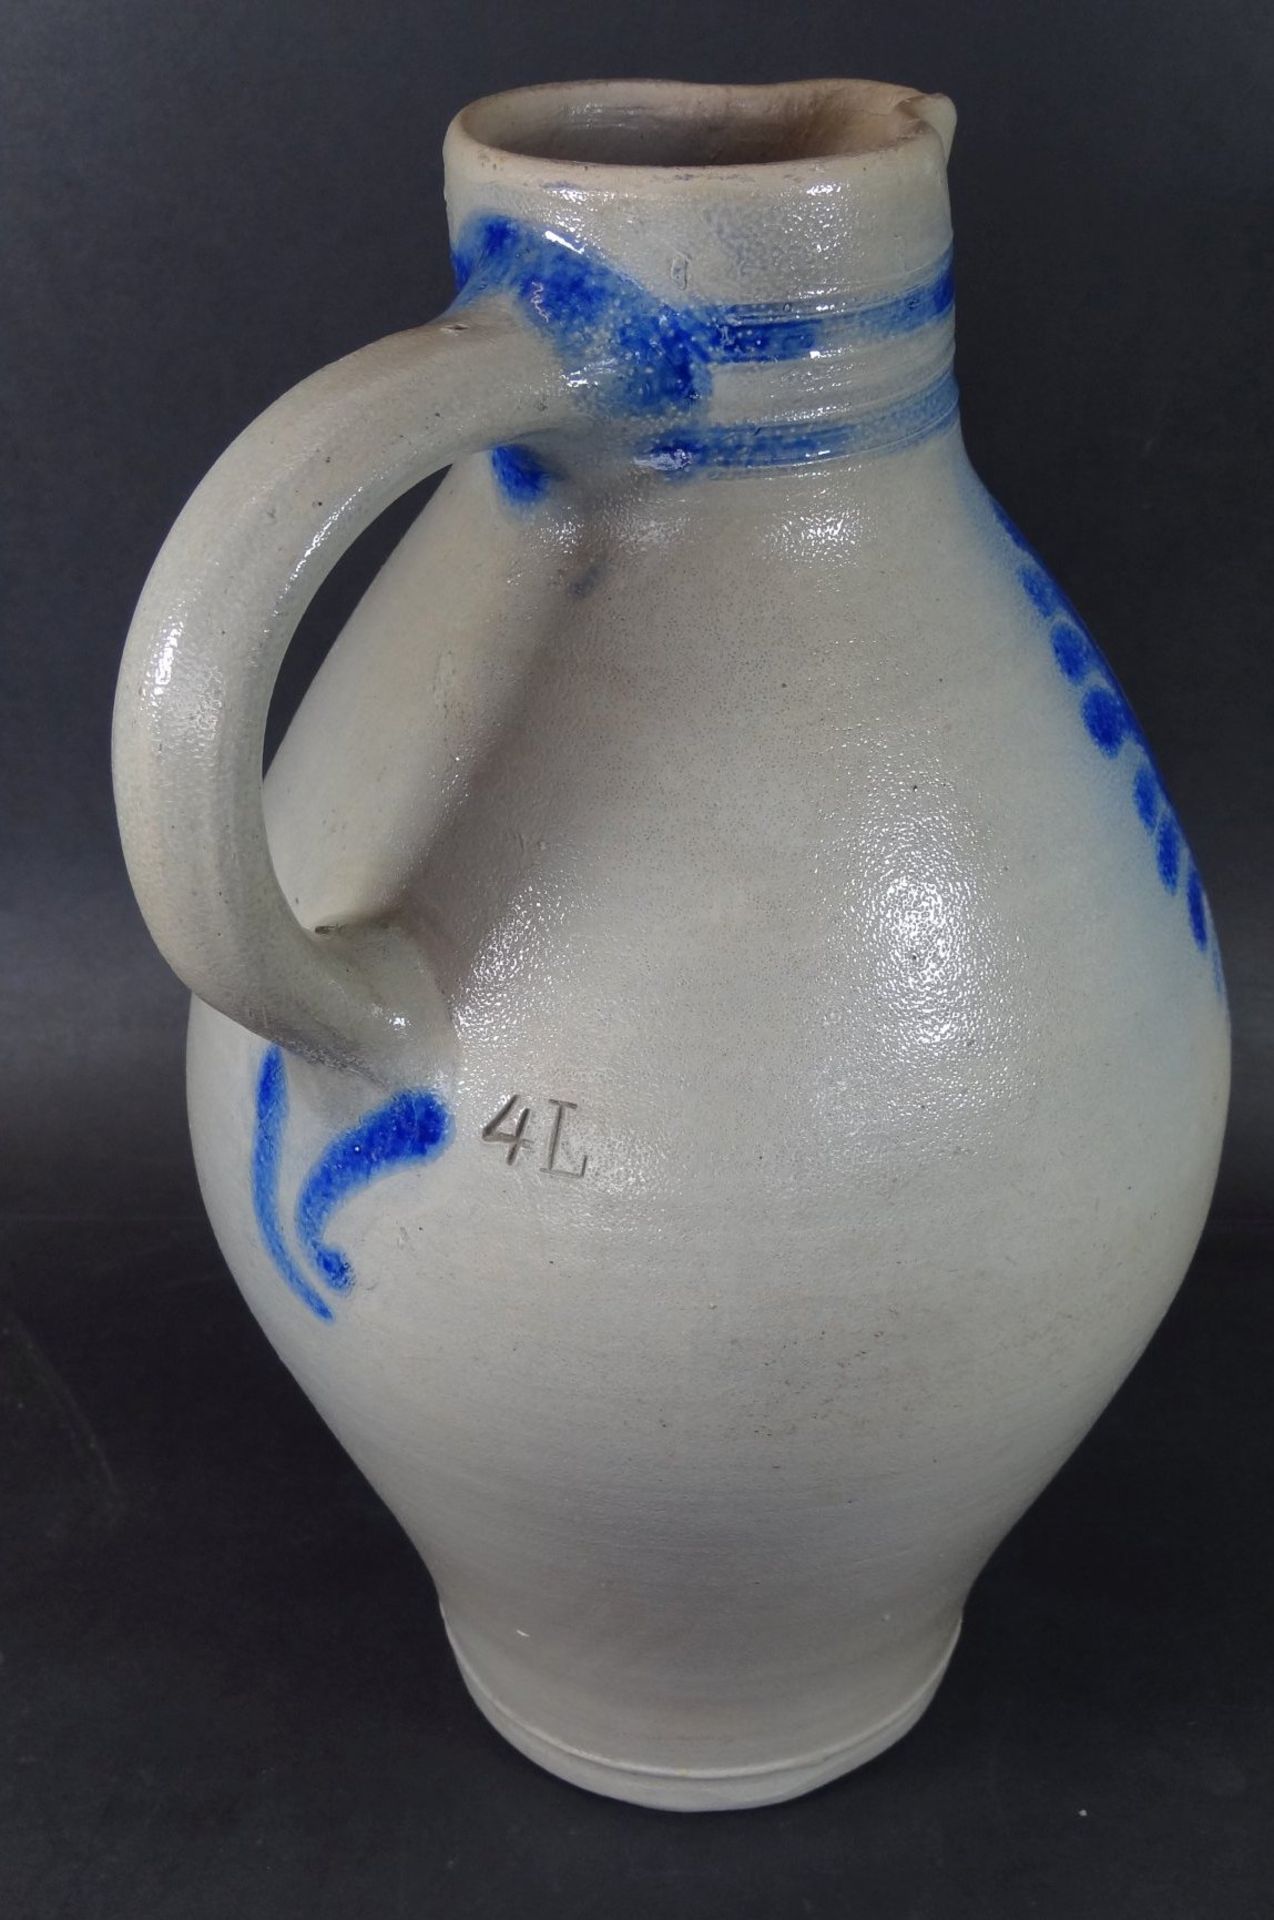 4 Liter Krug, Steinzeug mit Blaumalerei, Ausguss mit Abplatzer, H-31 cm - Bild 3 aus 6